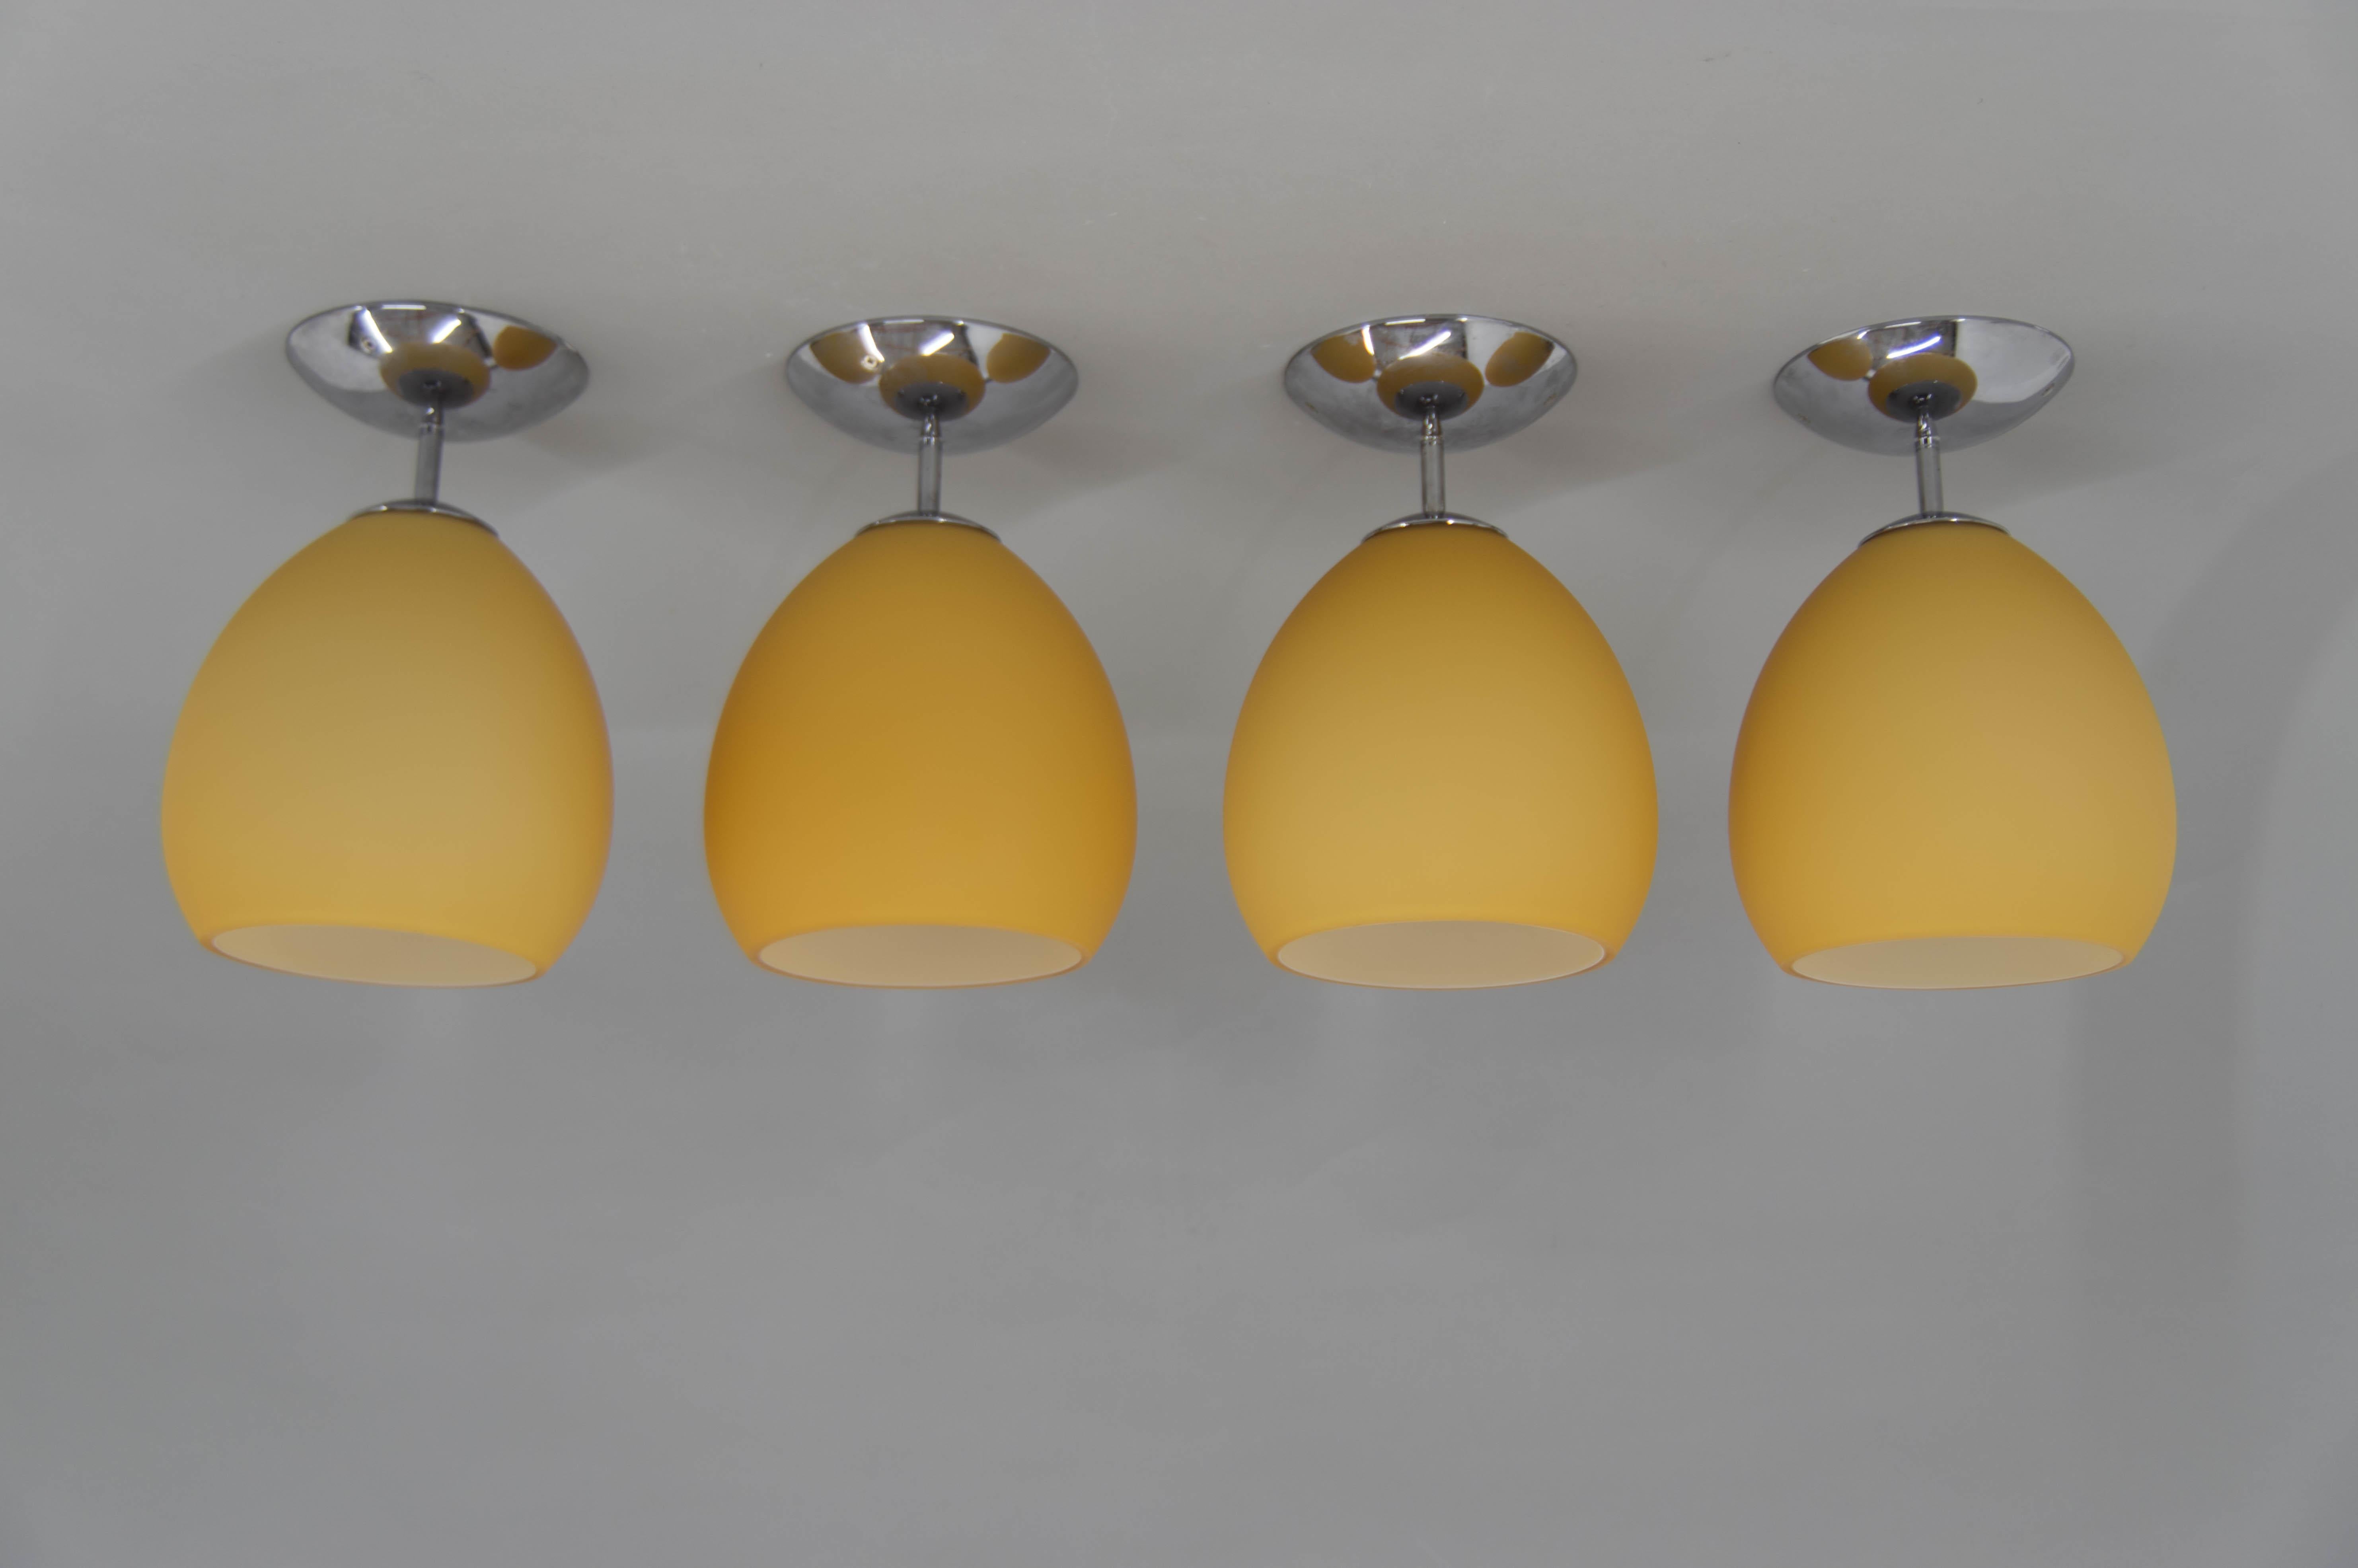 Satz von vier gelben Golf PL lfush Halterungen von Leucos entworfen von Toso & Massari in den 1990er Jahren.
Murano-Glas mit satinierter Oberfläche.
Set ist in perfektem Zustand
E25-E27-Glühbirne
US-Verkabelung kompatibel